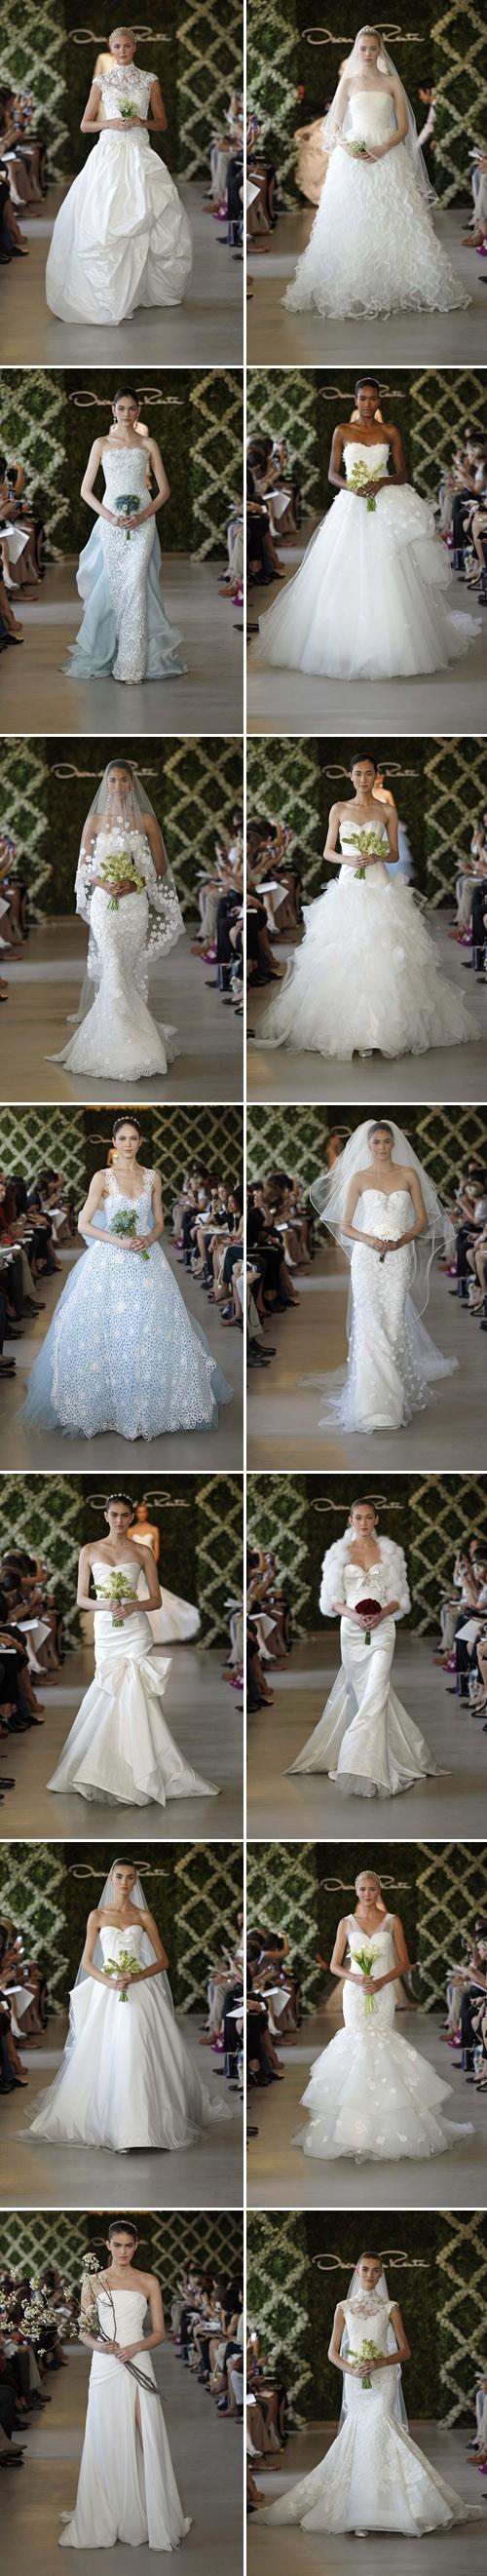 Свадьба - 2013 Свадебные платья ♥ Оскар де ла Рента Специальные свадебные платья дизайн